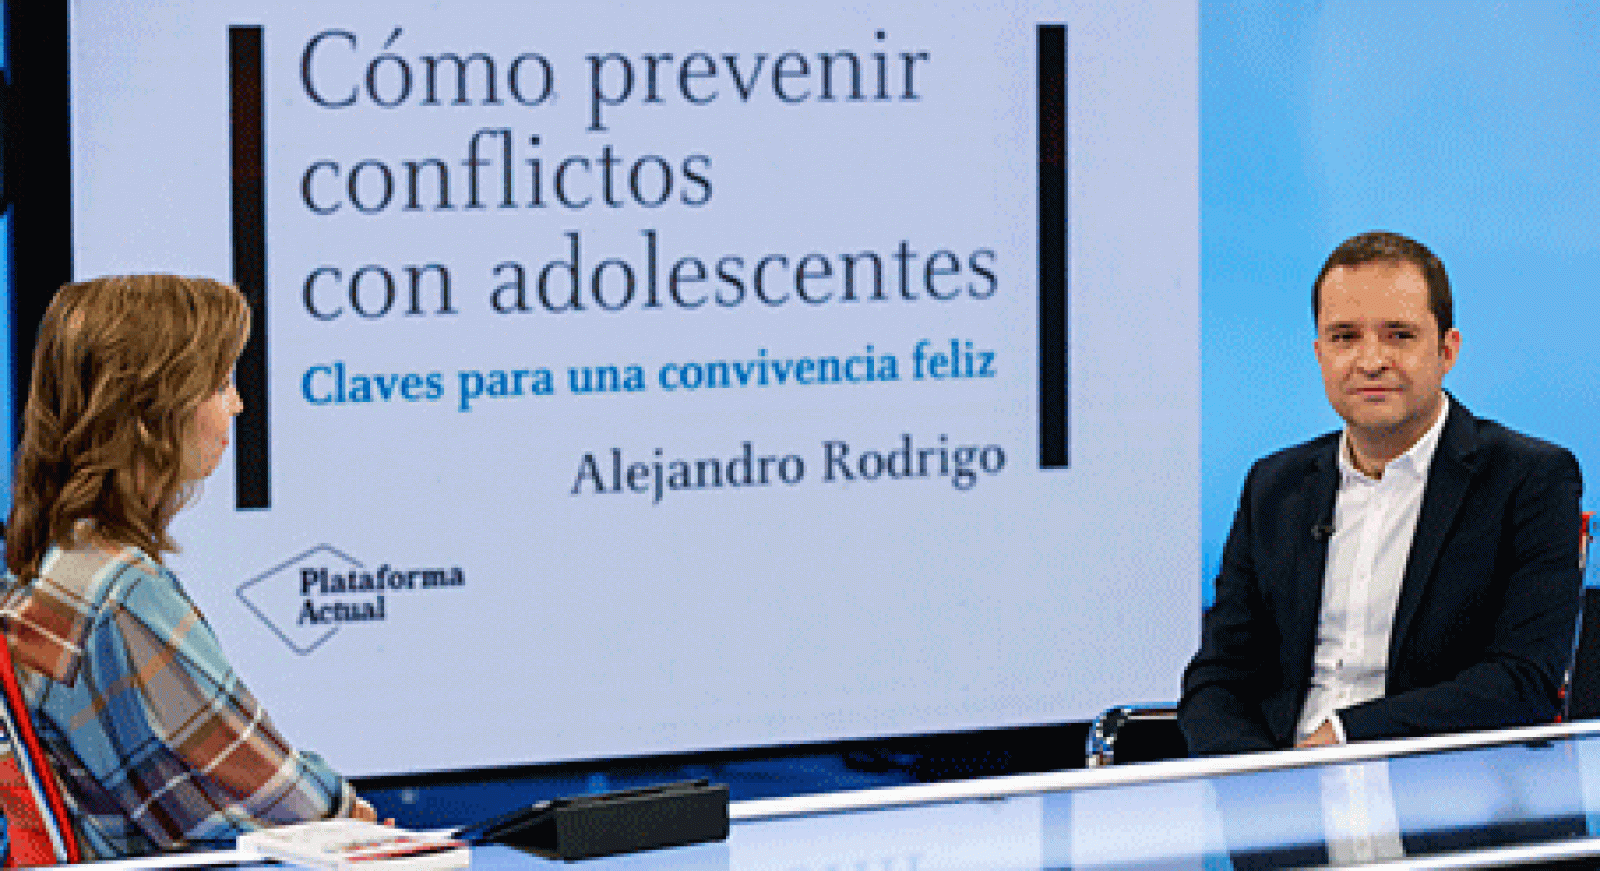 La aventura del saber prevenir conflictos con los adolescentes Alejandro Rodrigo #Adolescentes #AventuraSaberEducación